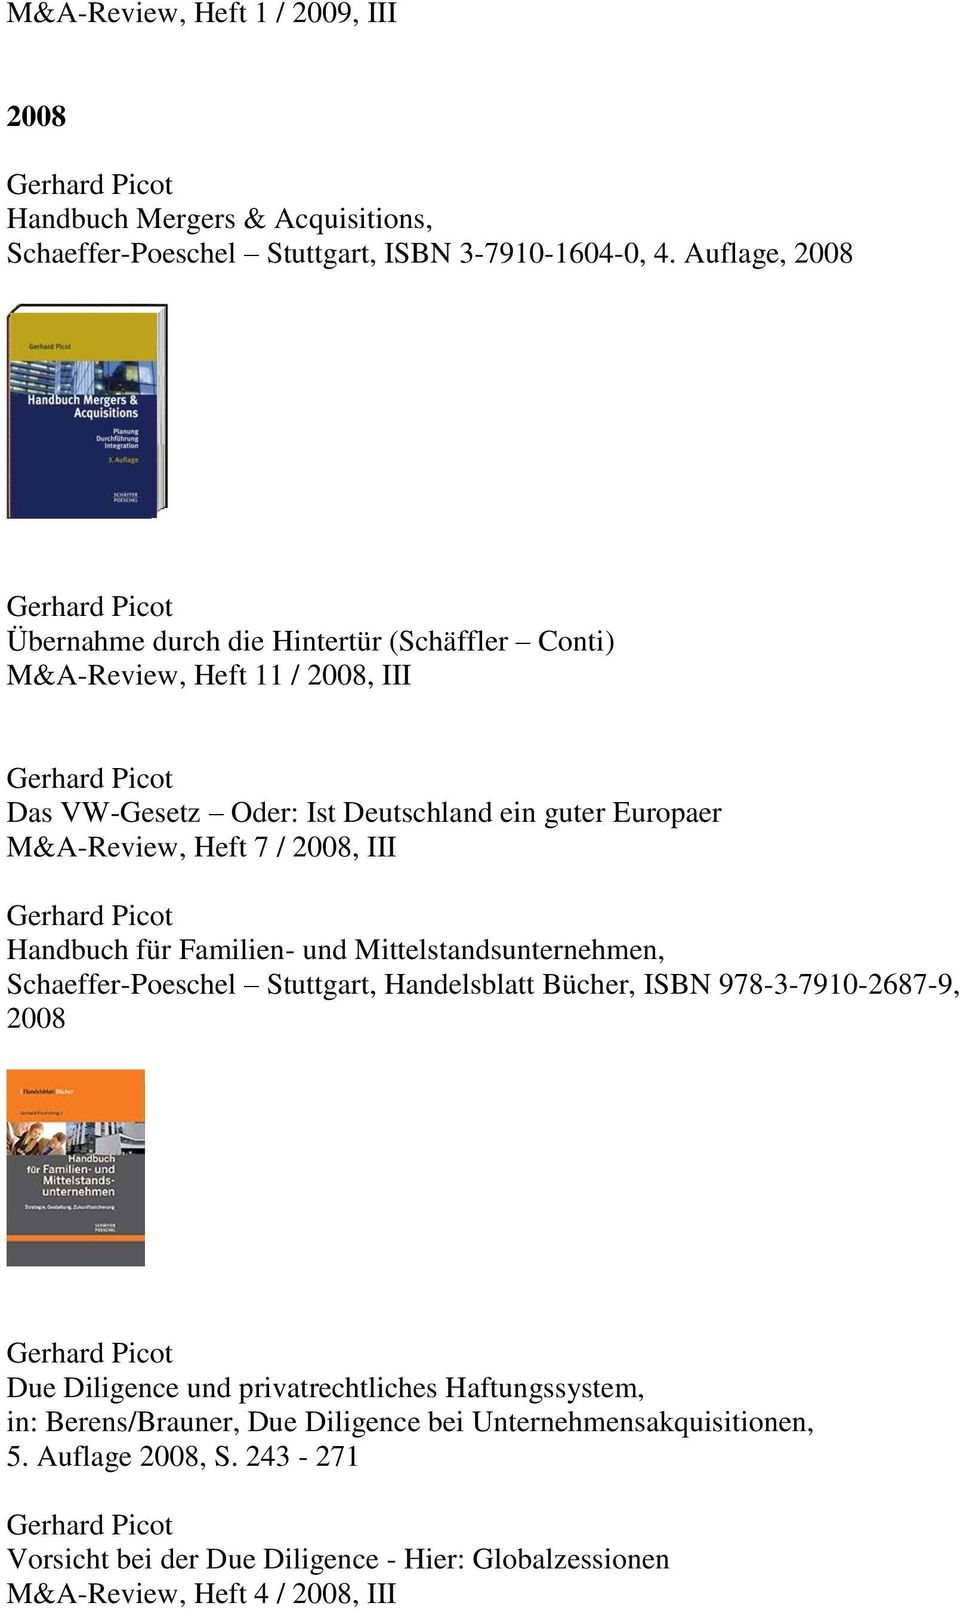 7 / 2008, III Handbuch für Familien- und Mittelstandsunternehmen, Schaeffer-Poeschel Stuttgart, Handelsblatt Bücher, ISBN 978-3-7910-2687-9, 2008 Due Diligence und